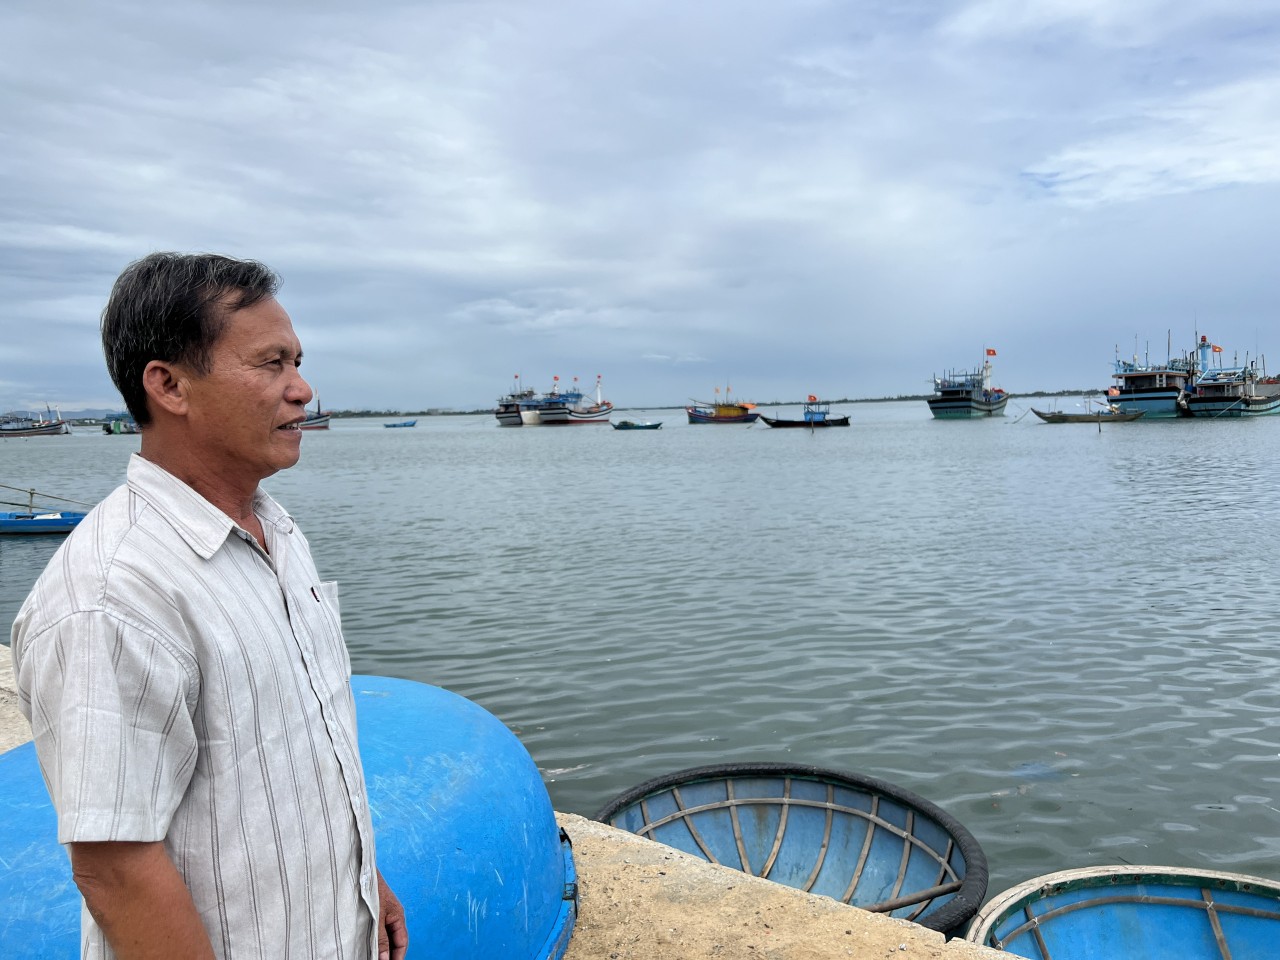 Núi Thành, Quảng Nam: Người già đi biển